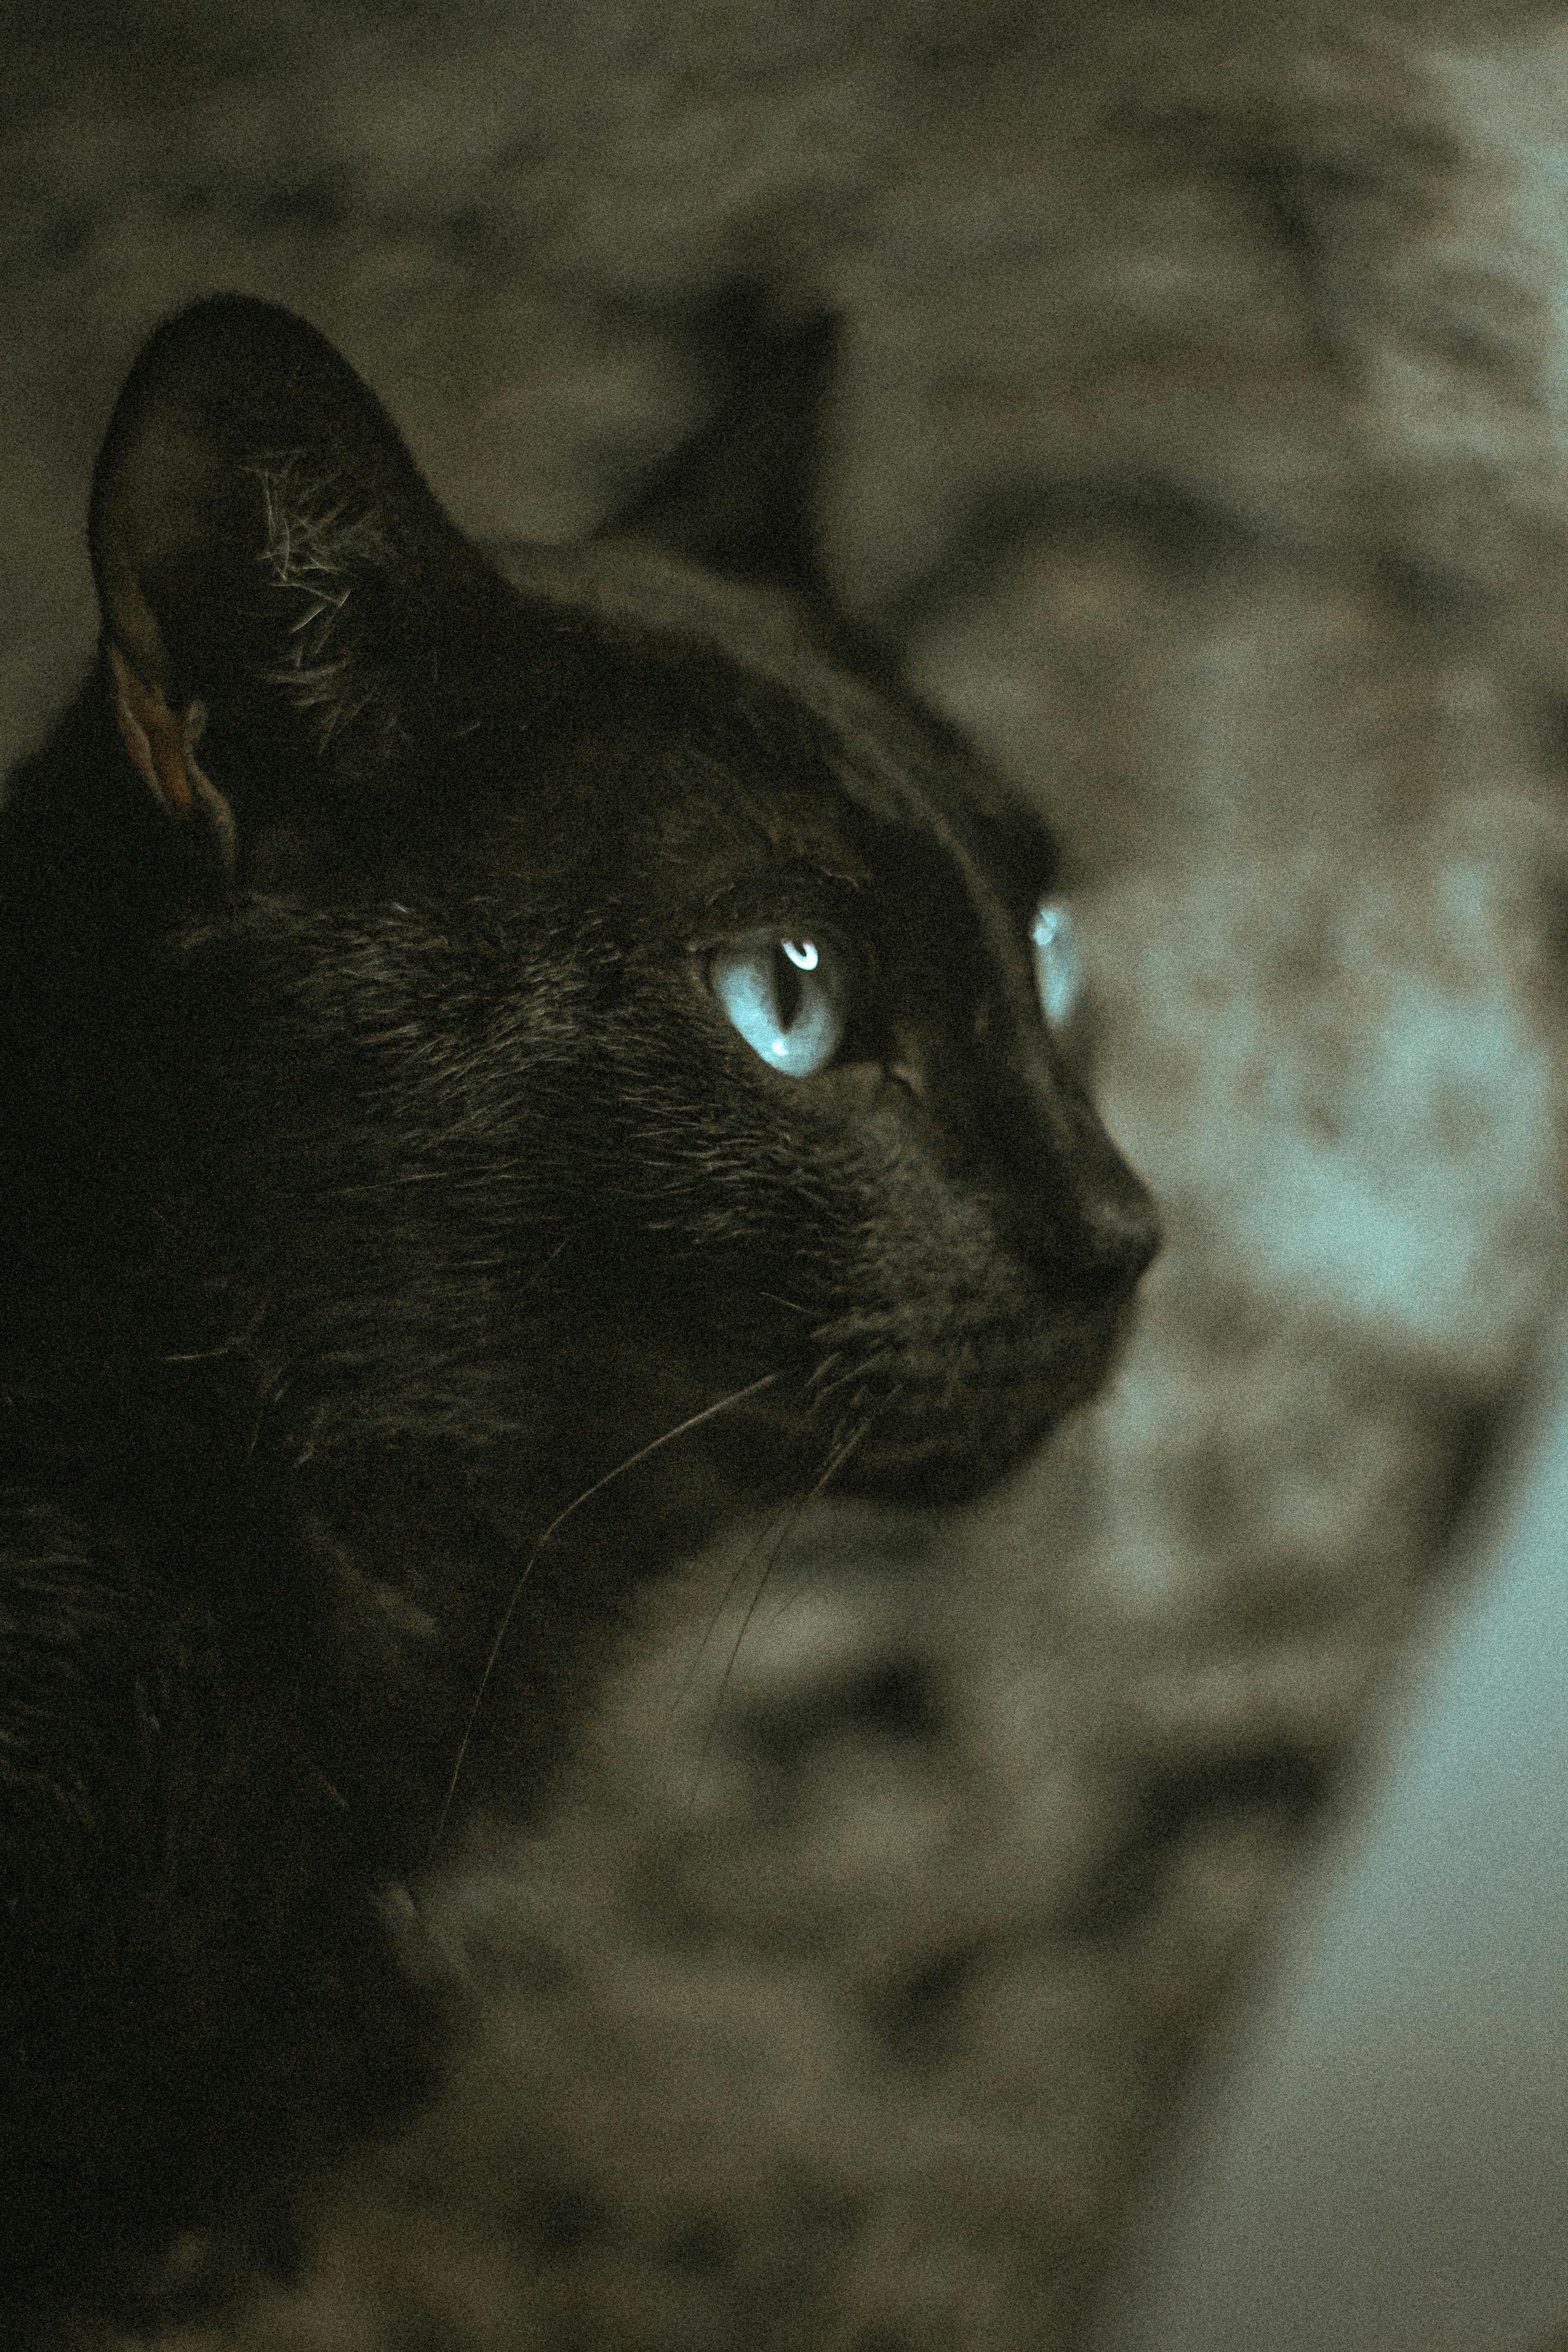 Black Cat on Floor · Free Stock Photo